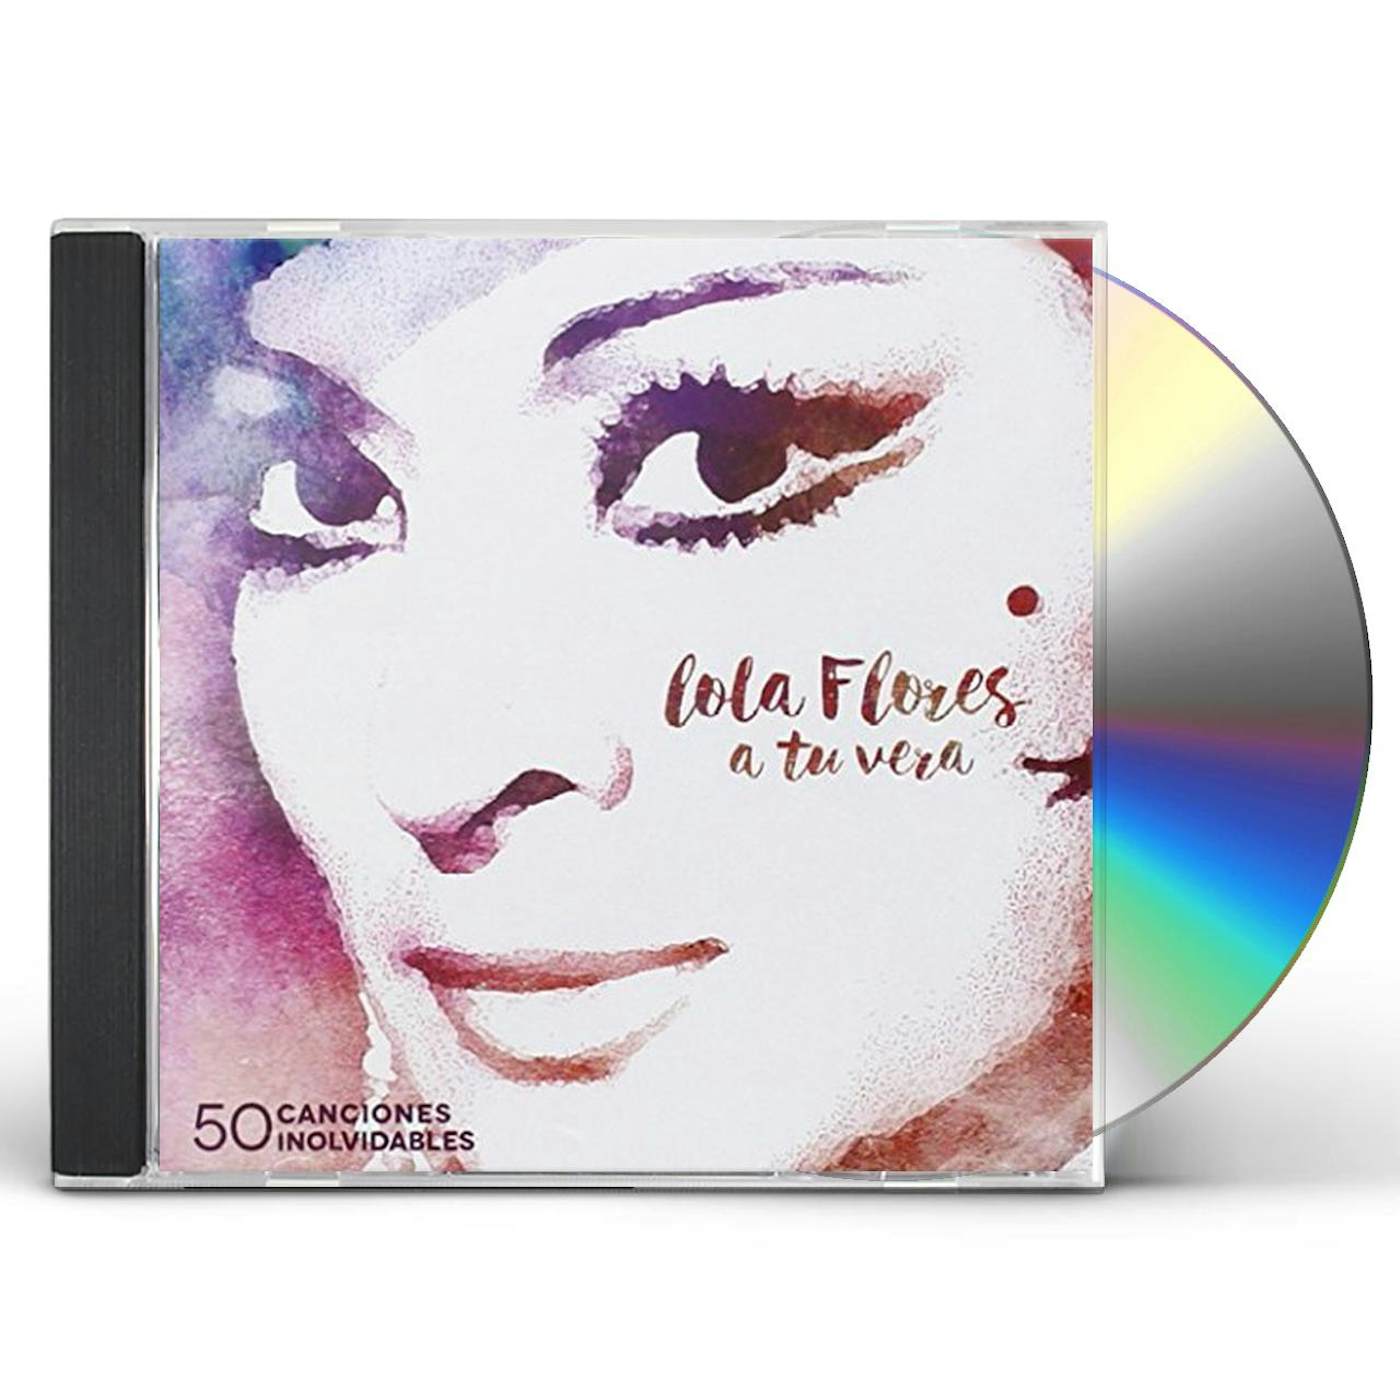 Lola Flores TU VERA CD